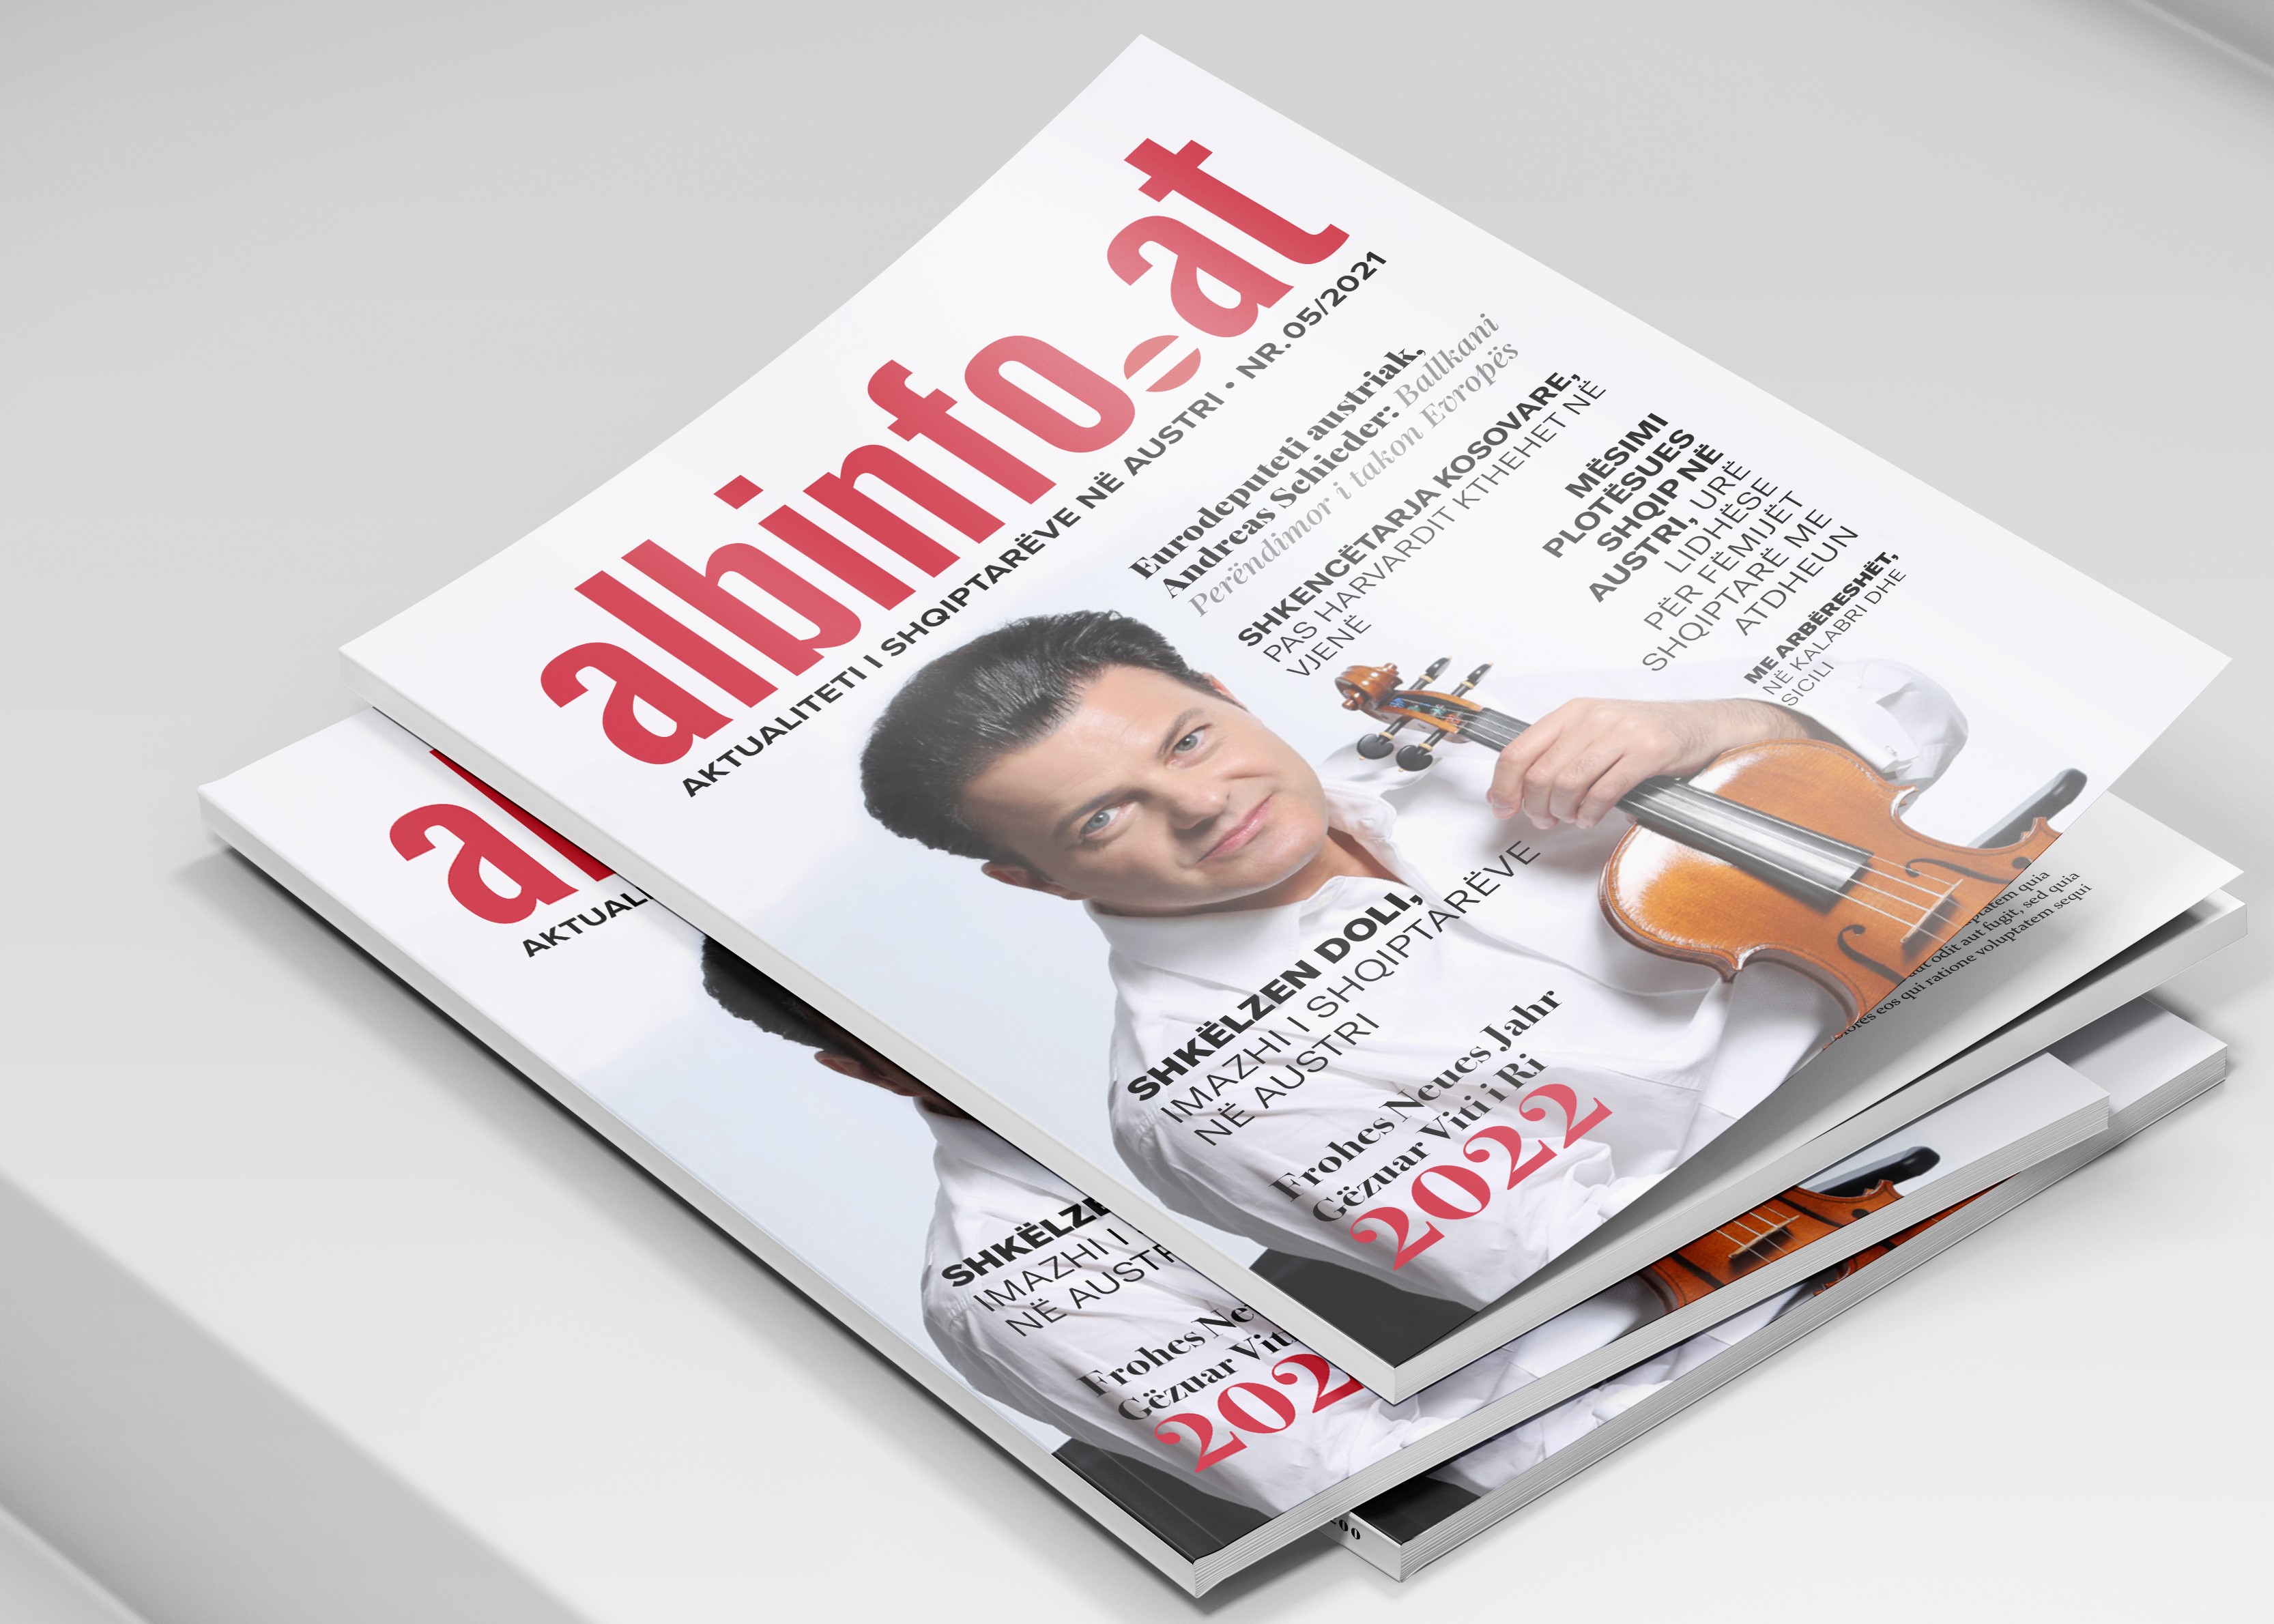 Doli numri festiv i revistës albinfo.at për Austri